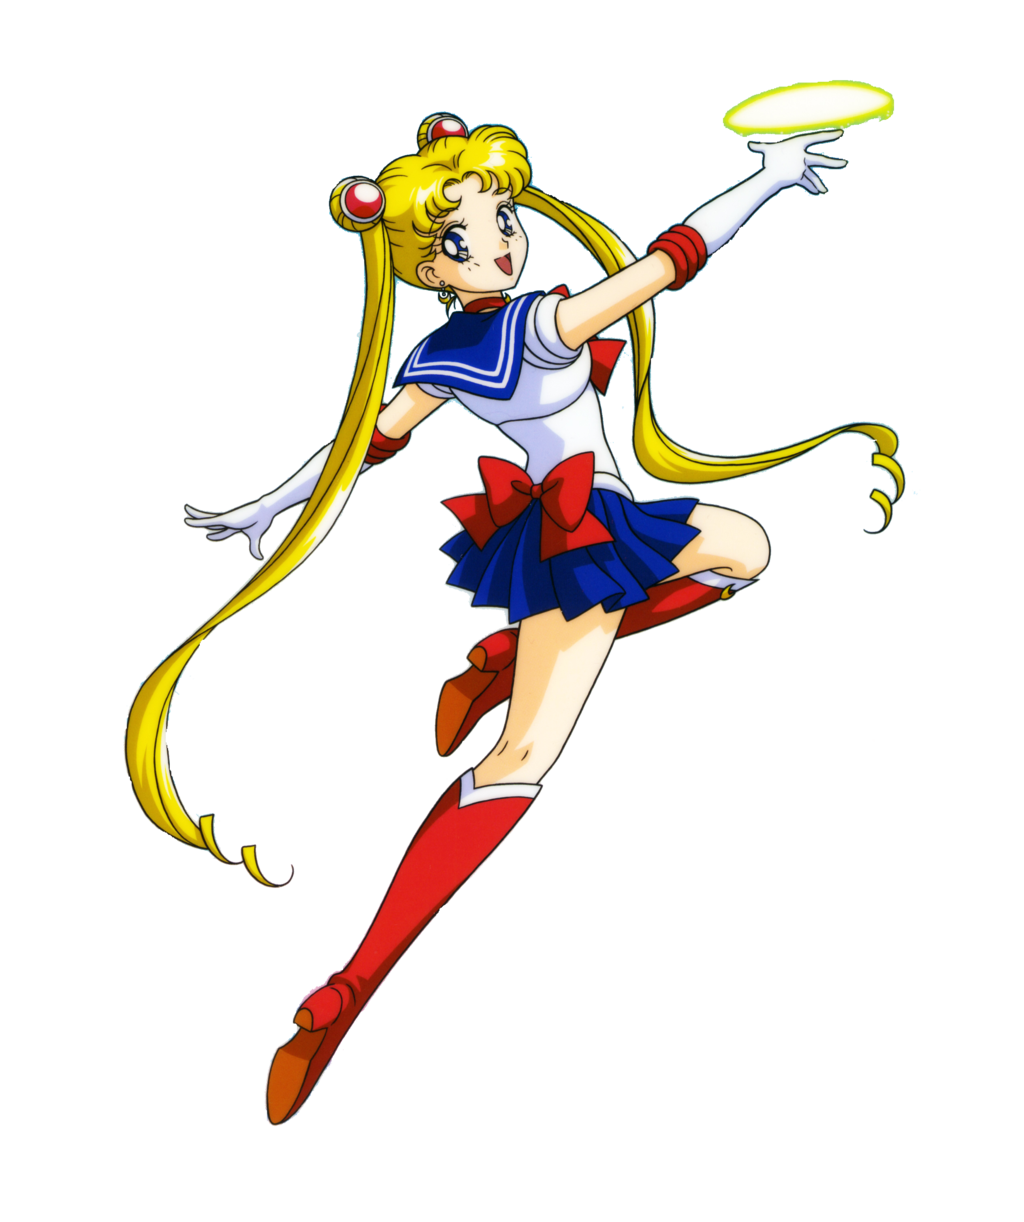 Download Sailor Moon Transparent Background HQ PNG Image | FreePNGImg